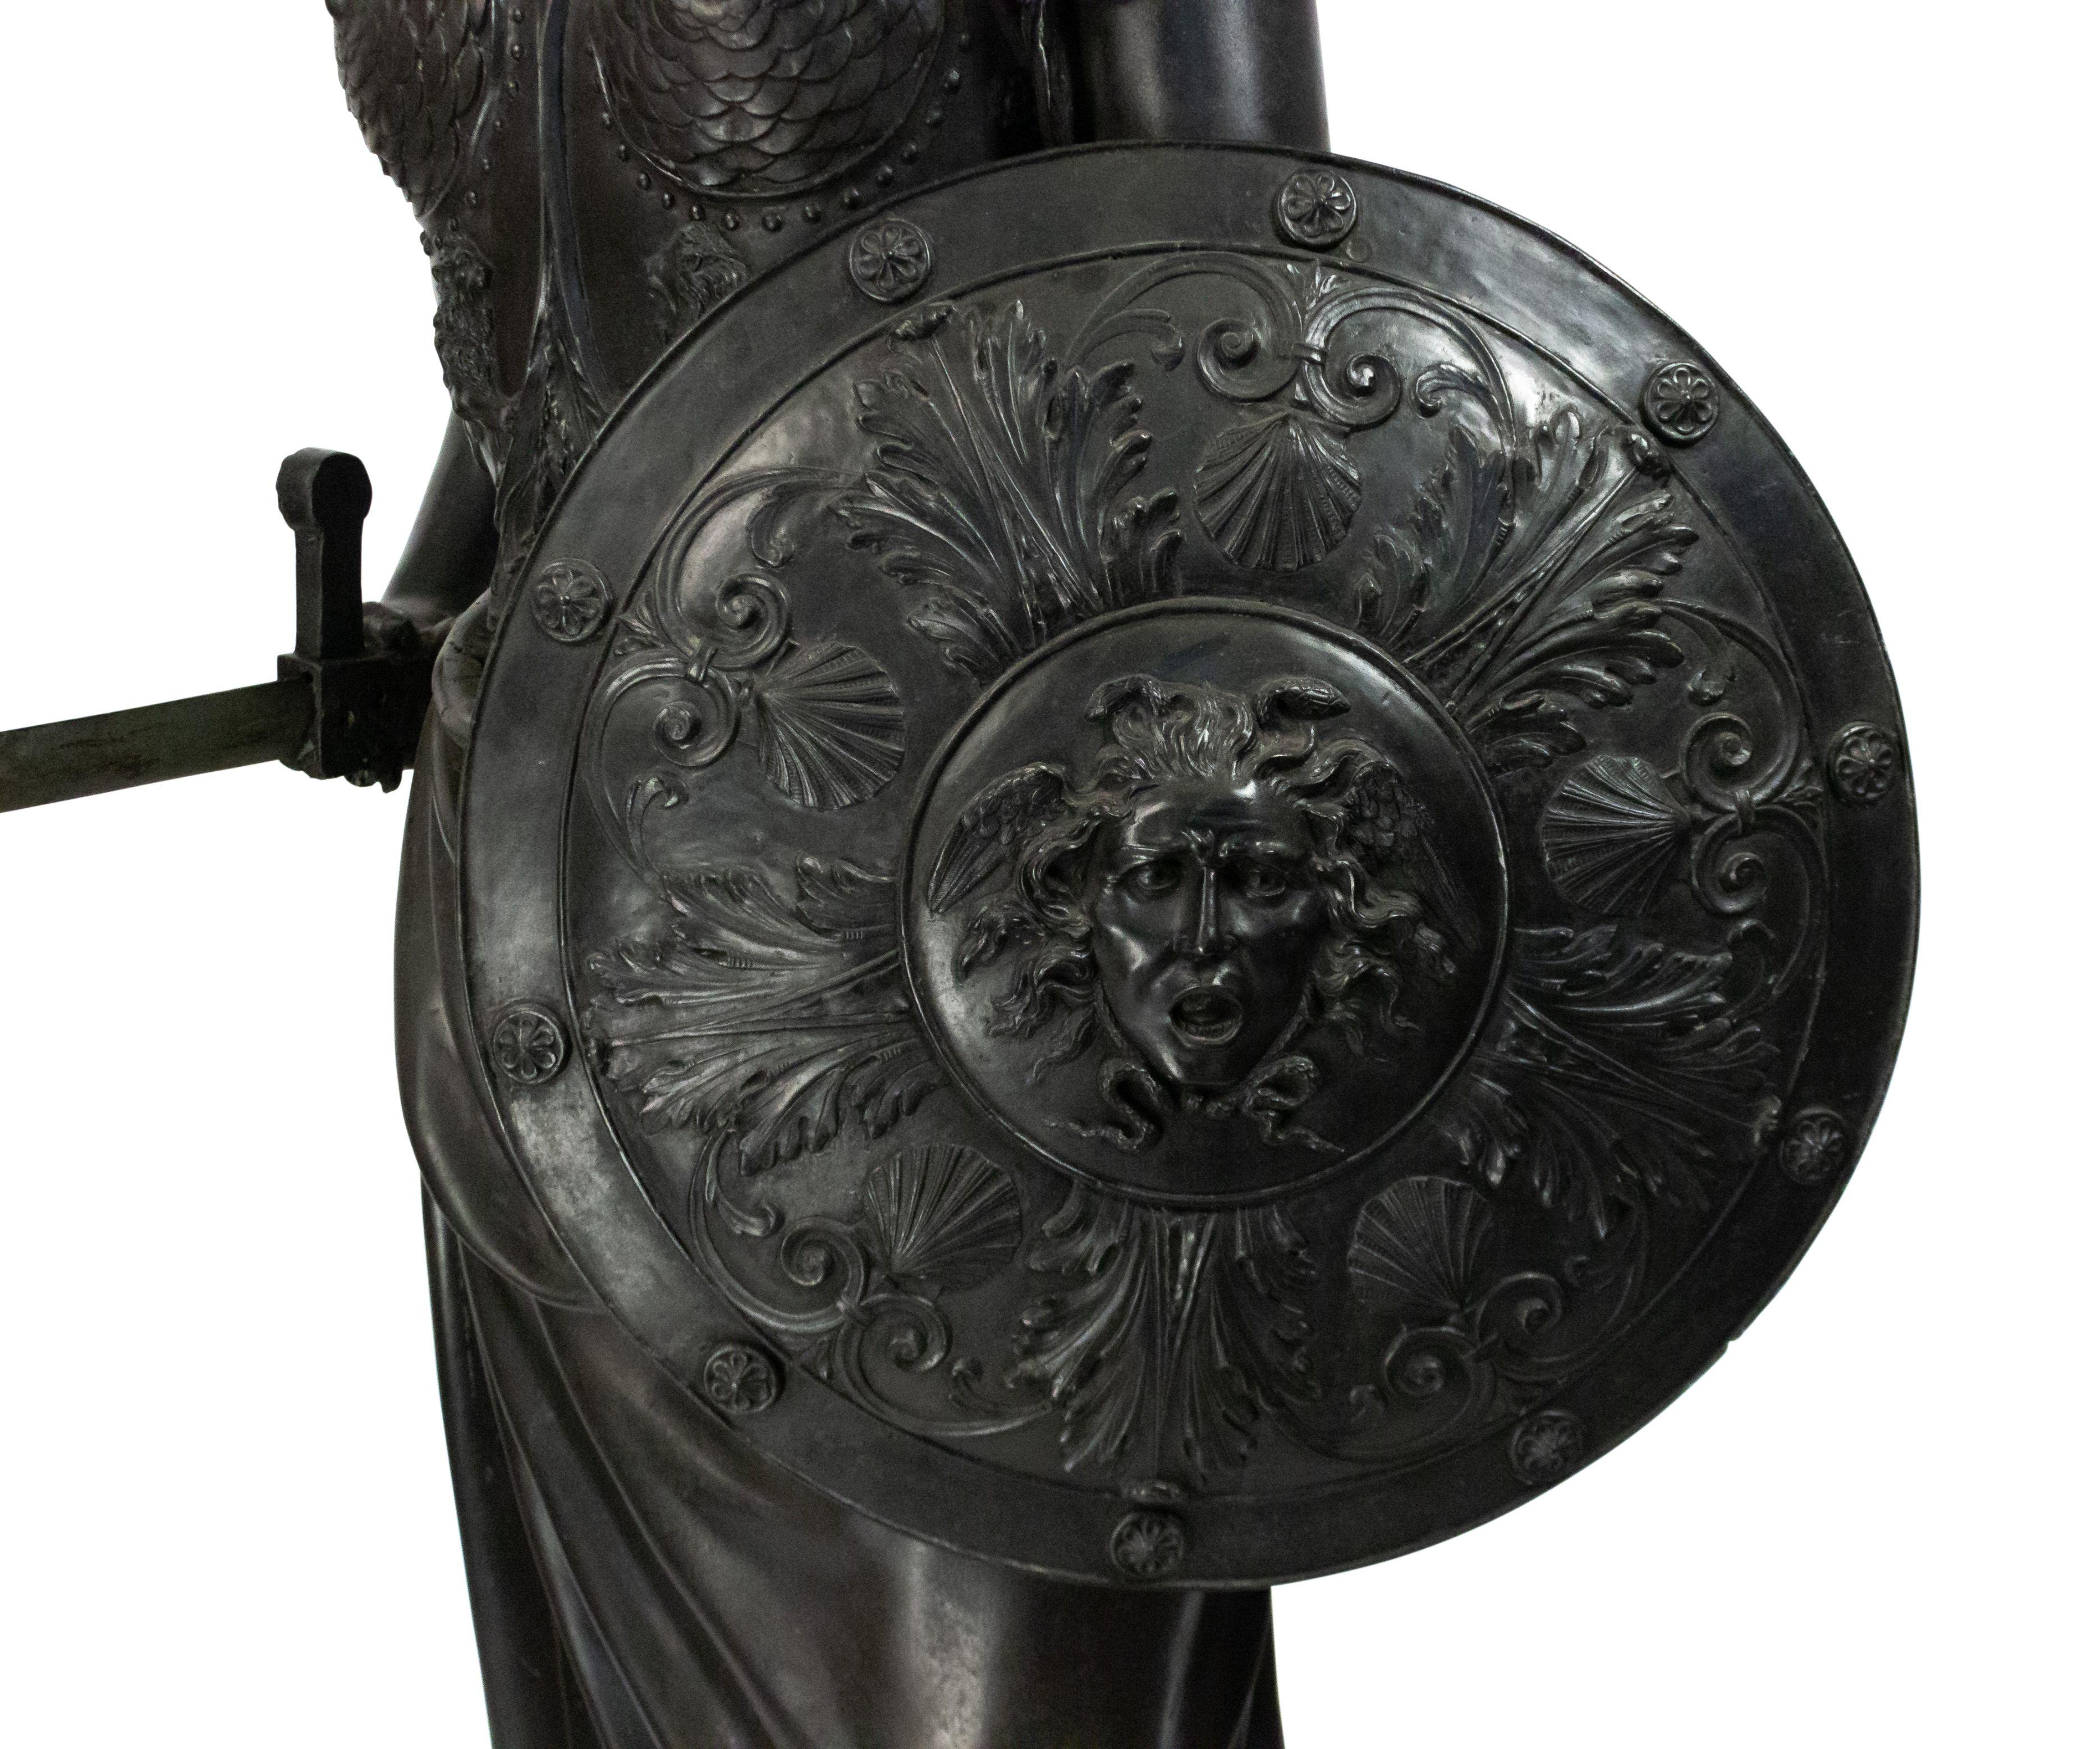 Bronze de style grec du XIXe siècle représentant une femme classique avec une garde-robe militaire tenant un bouclier rond décoré et une épée (l'épée a été remplacée par un modèle en bois).
